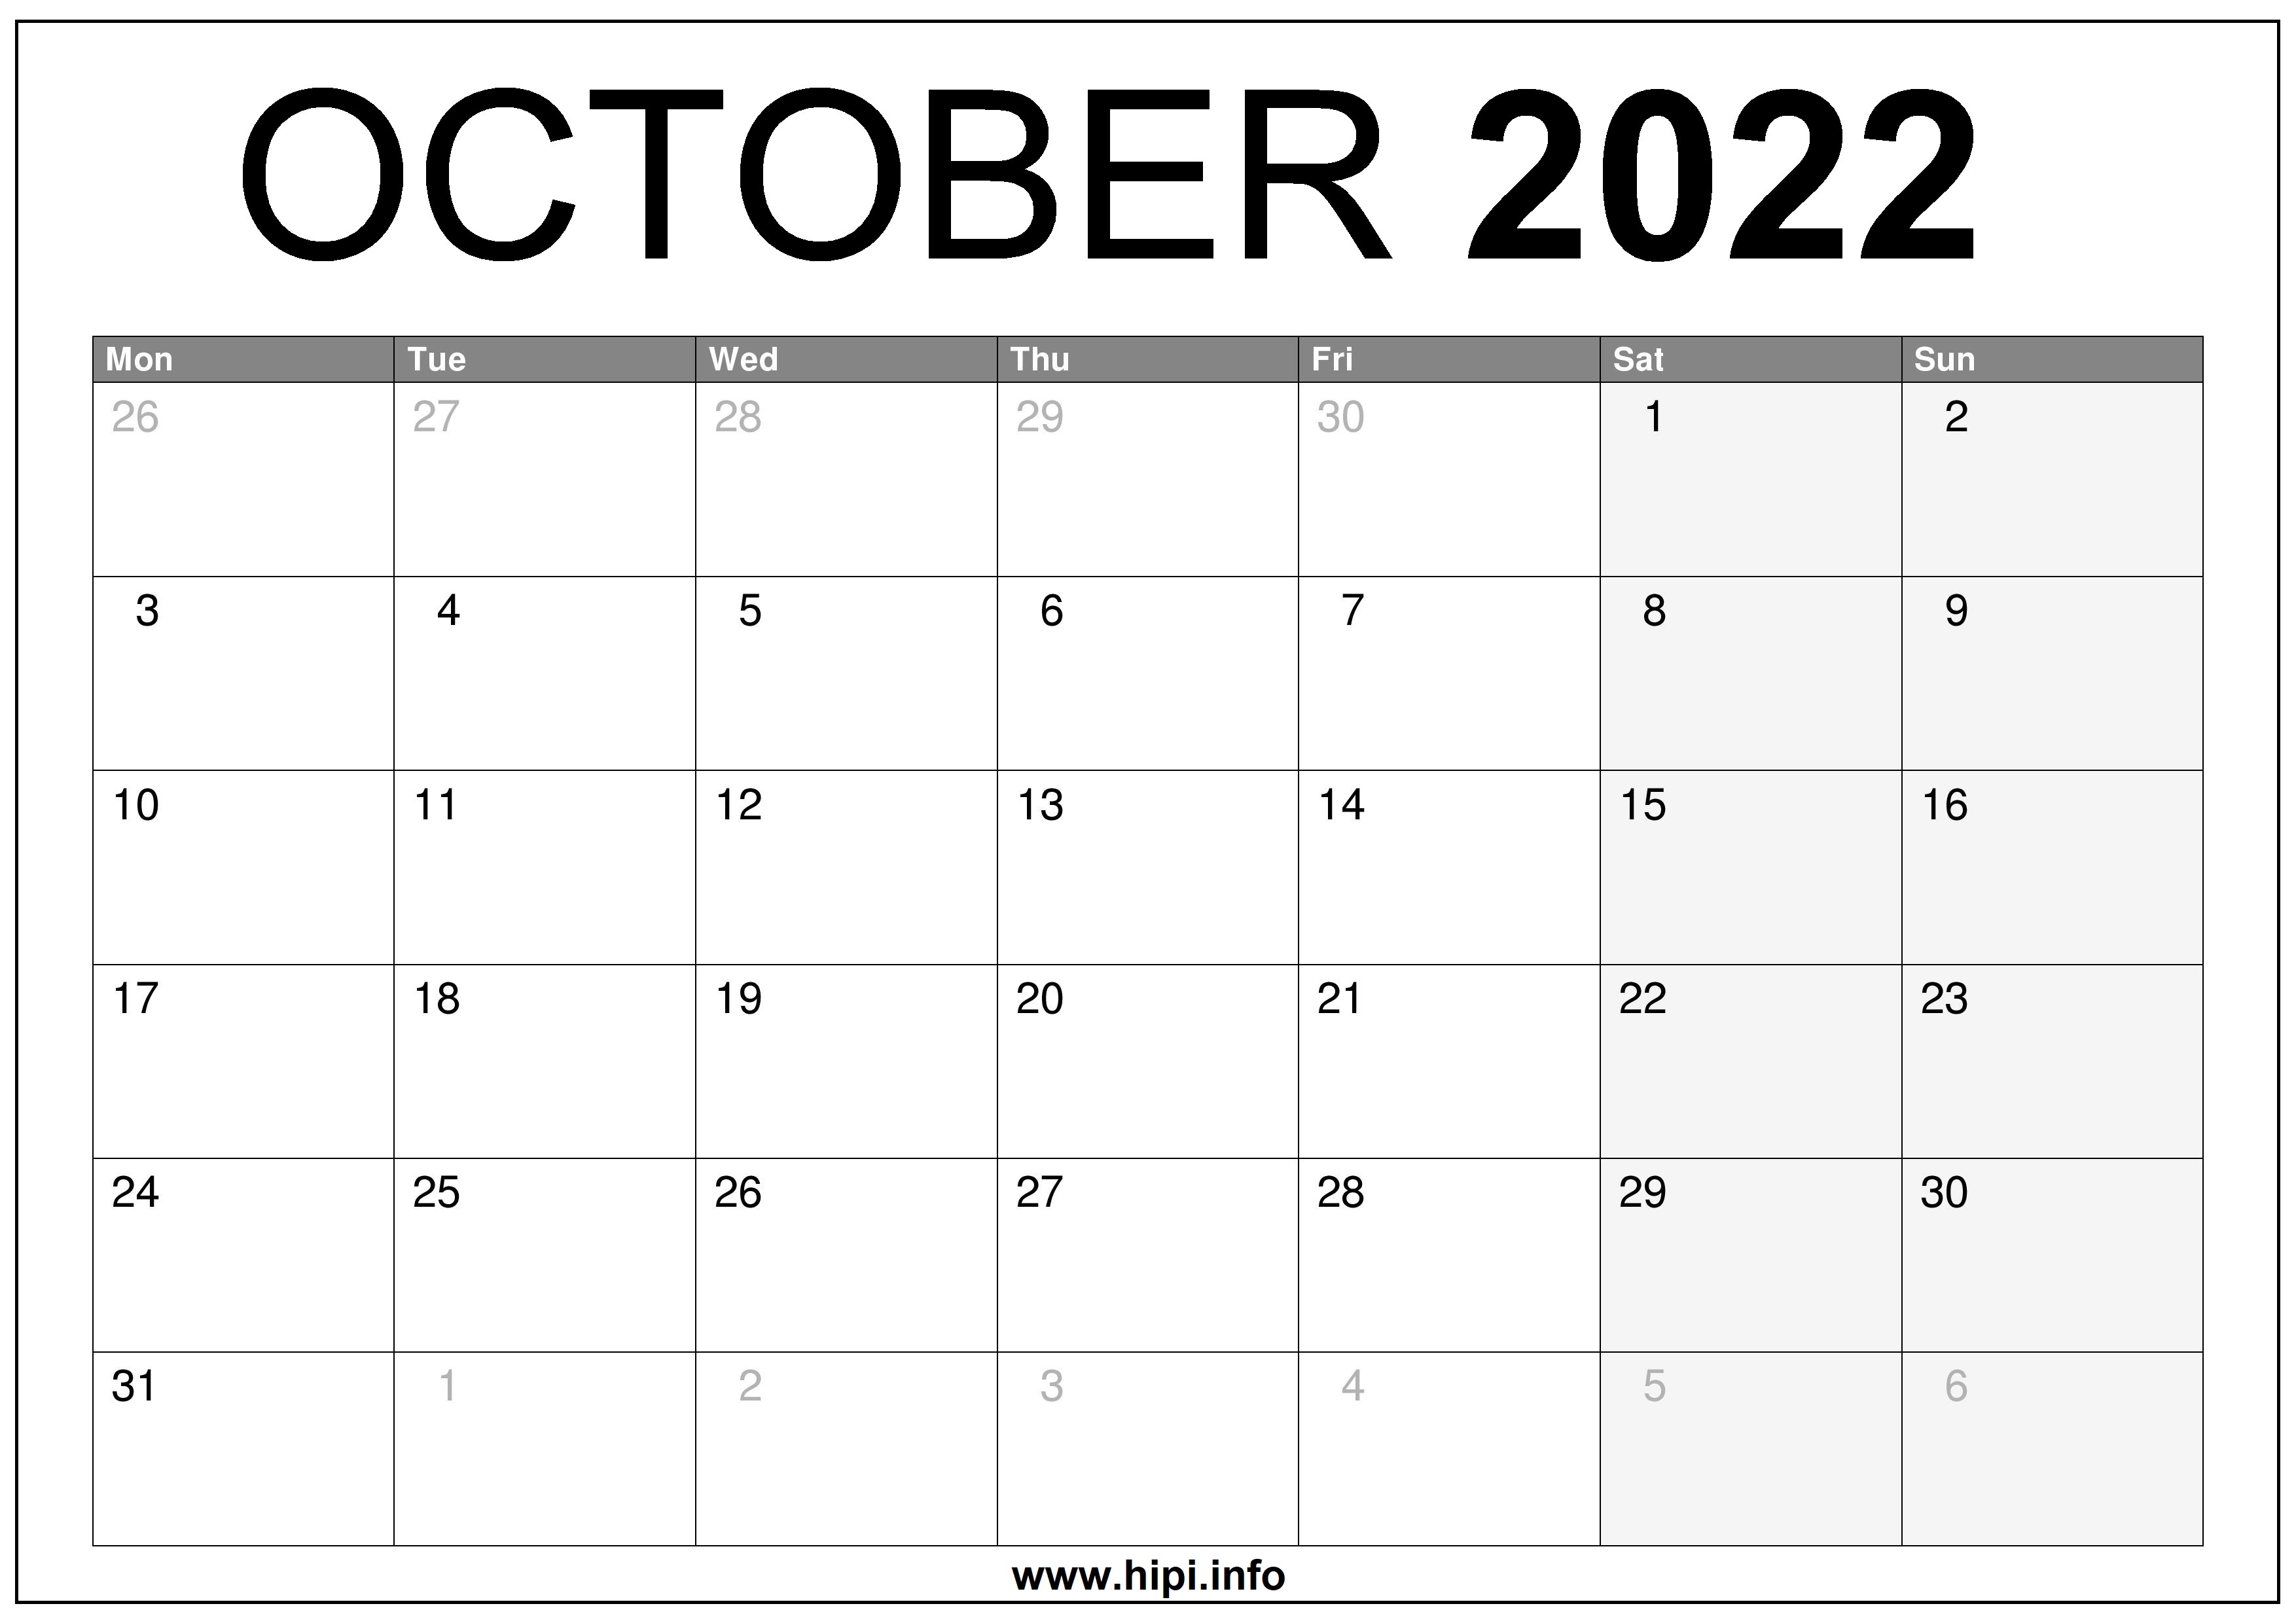 October 2022 Calendar To Print October 2022 Uk Calendar Printable Free - Hipi.info | Calendars Printable  Free